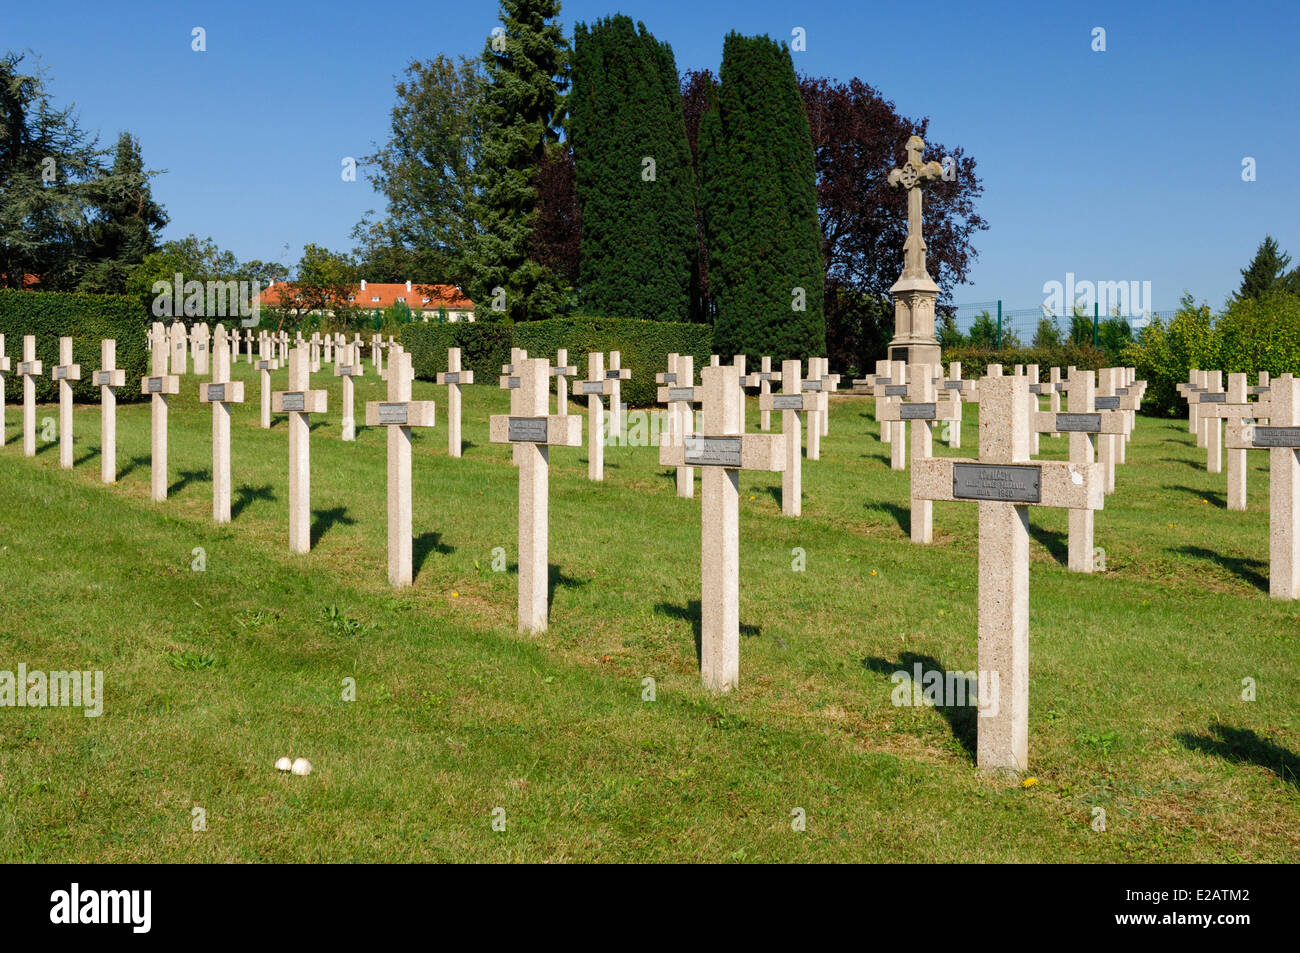 France, Moselle, Sarrebourg, cimetière militaire, tombes de soldats polonais sont morts en Lorraine pendant la seconde guerre mondiale Banque D'Images